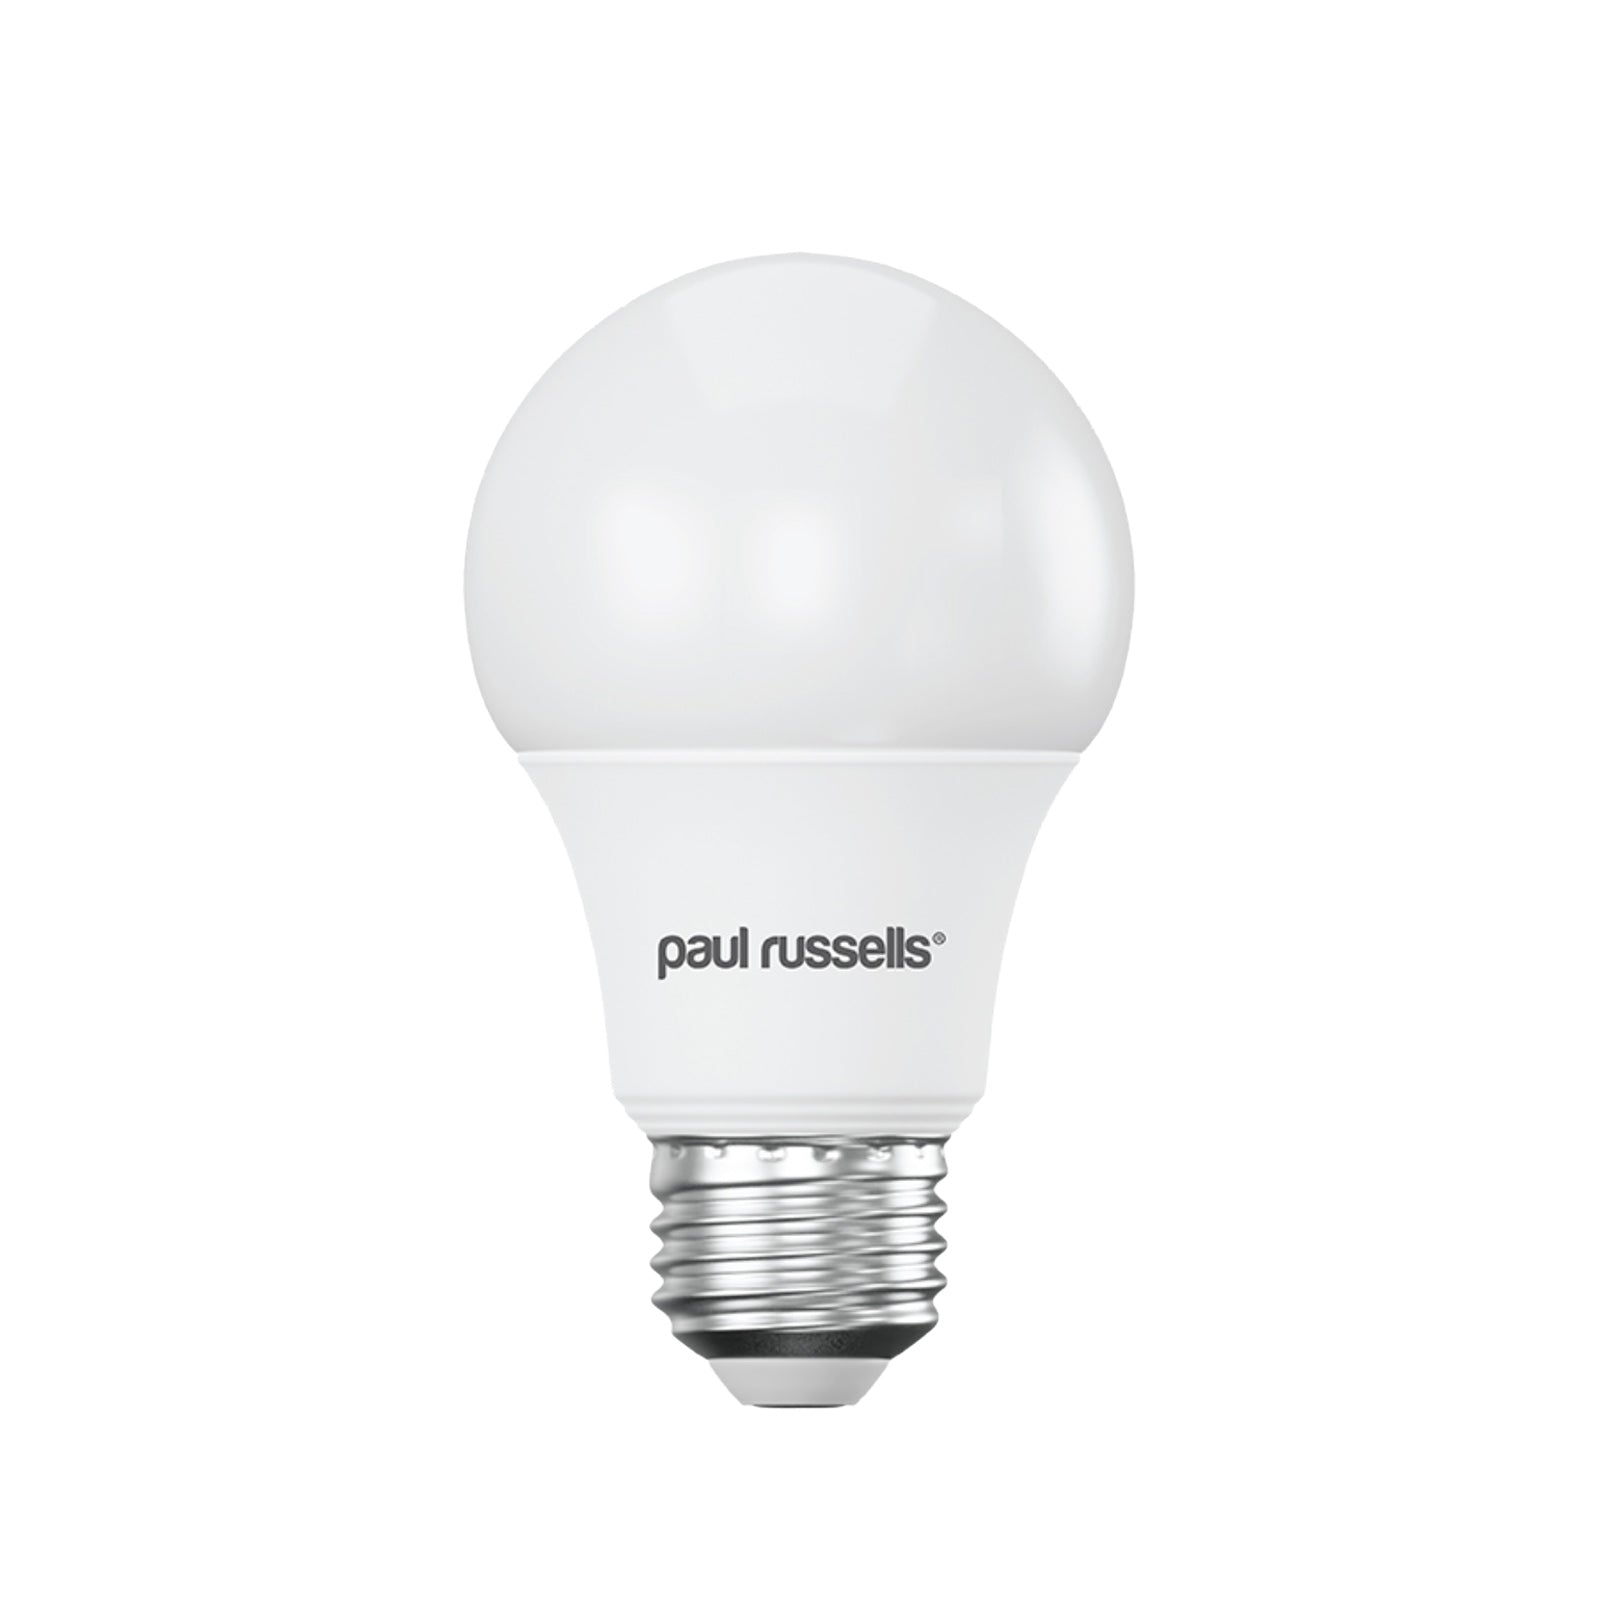 LED GLS 7W=45W Cool White Edison Screw Bulbs